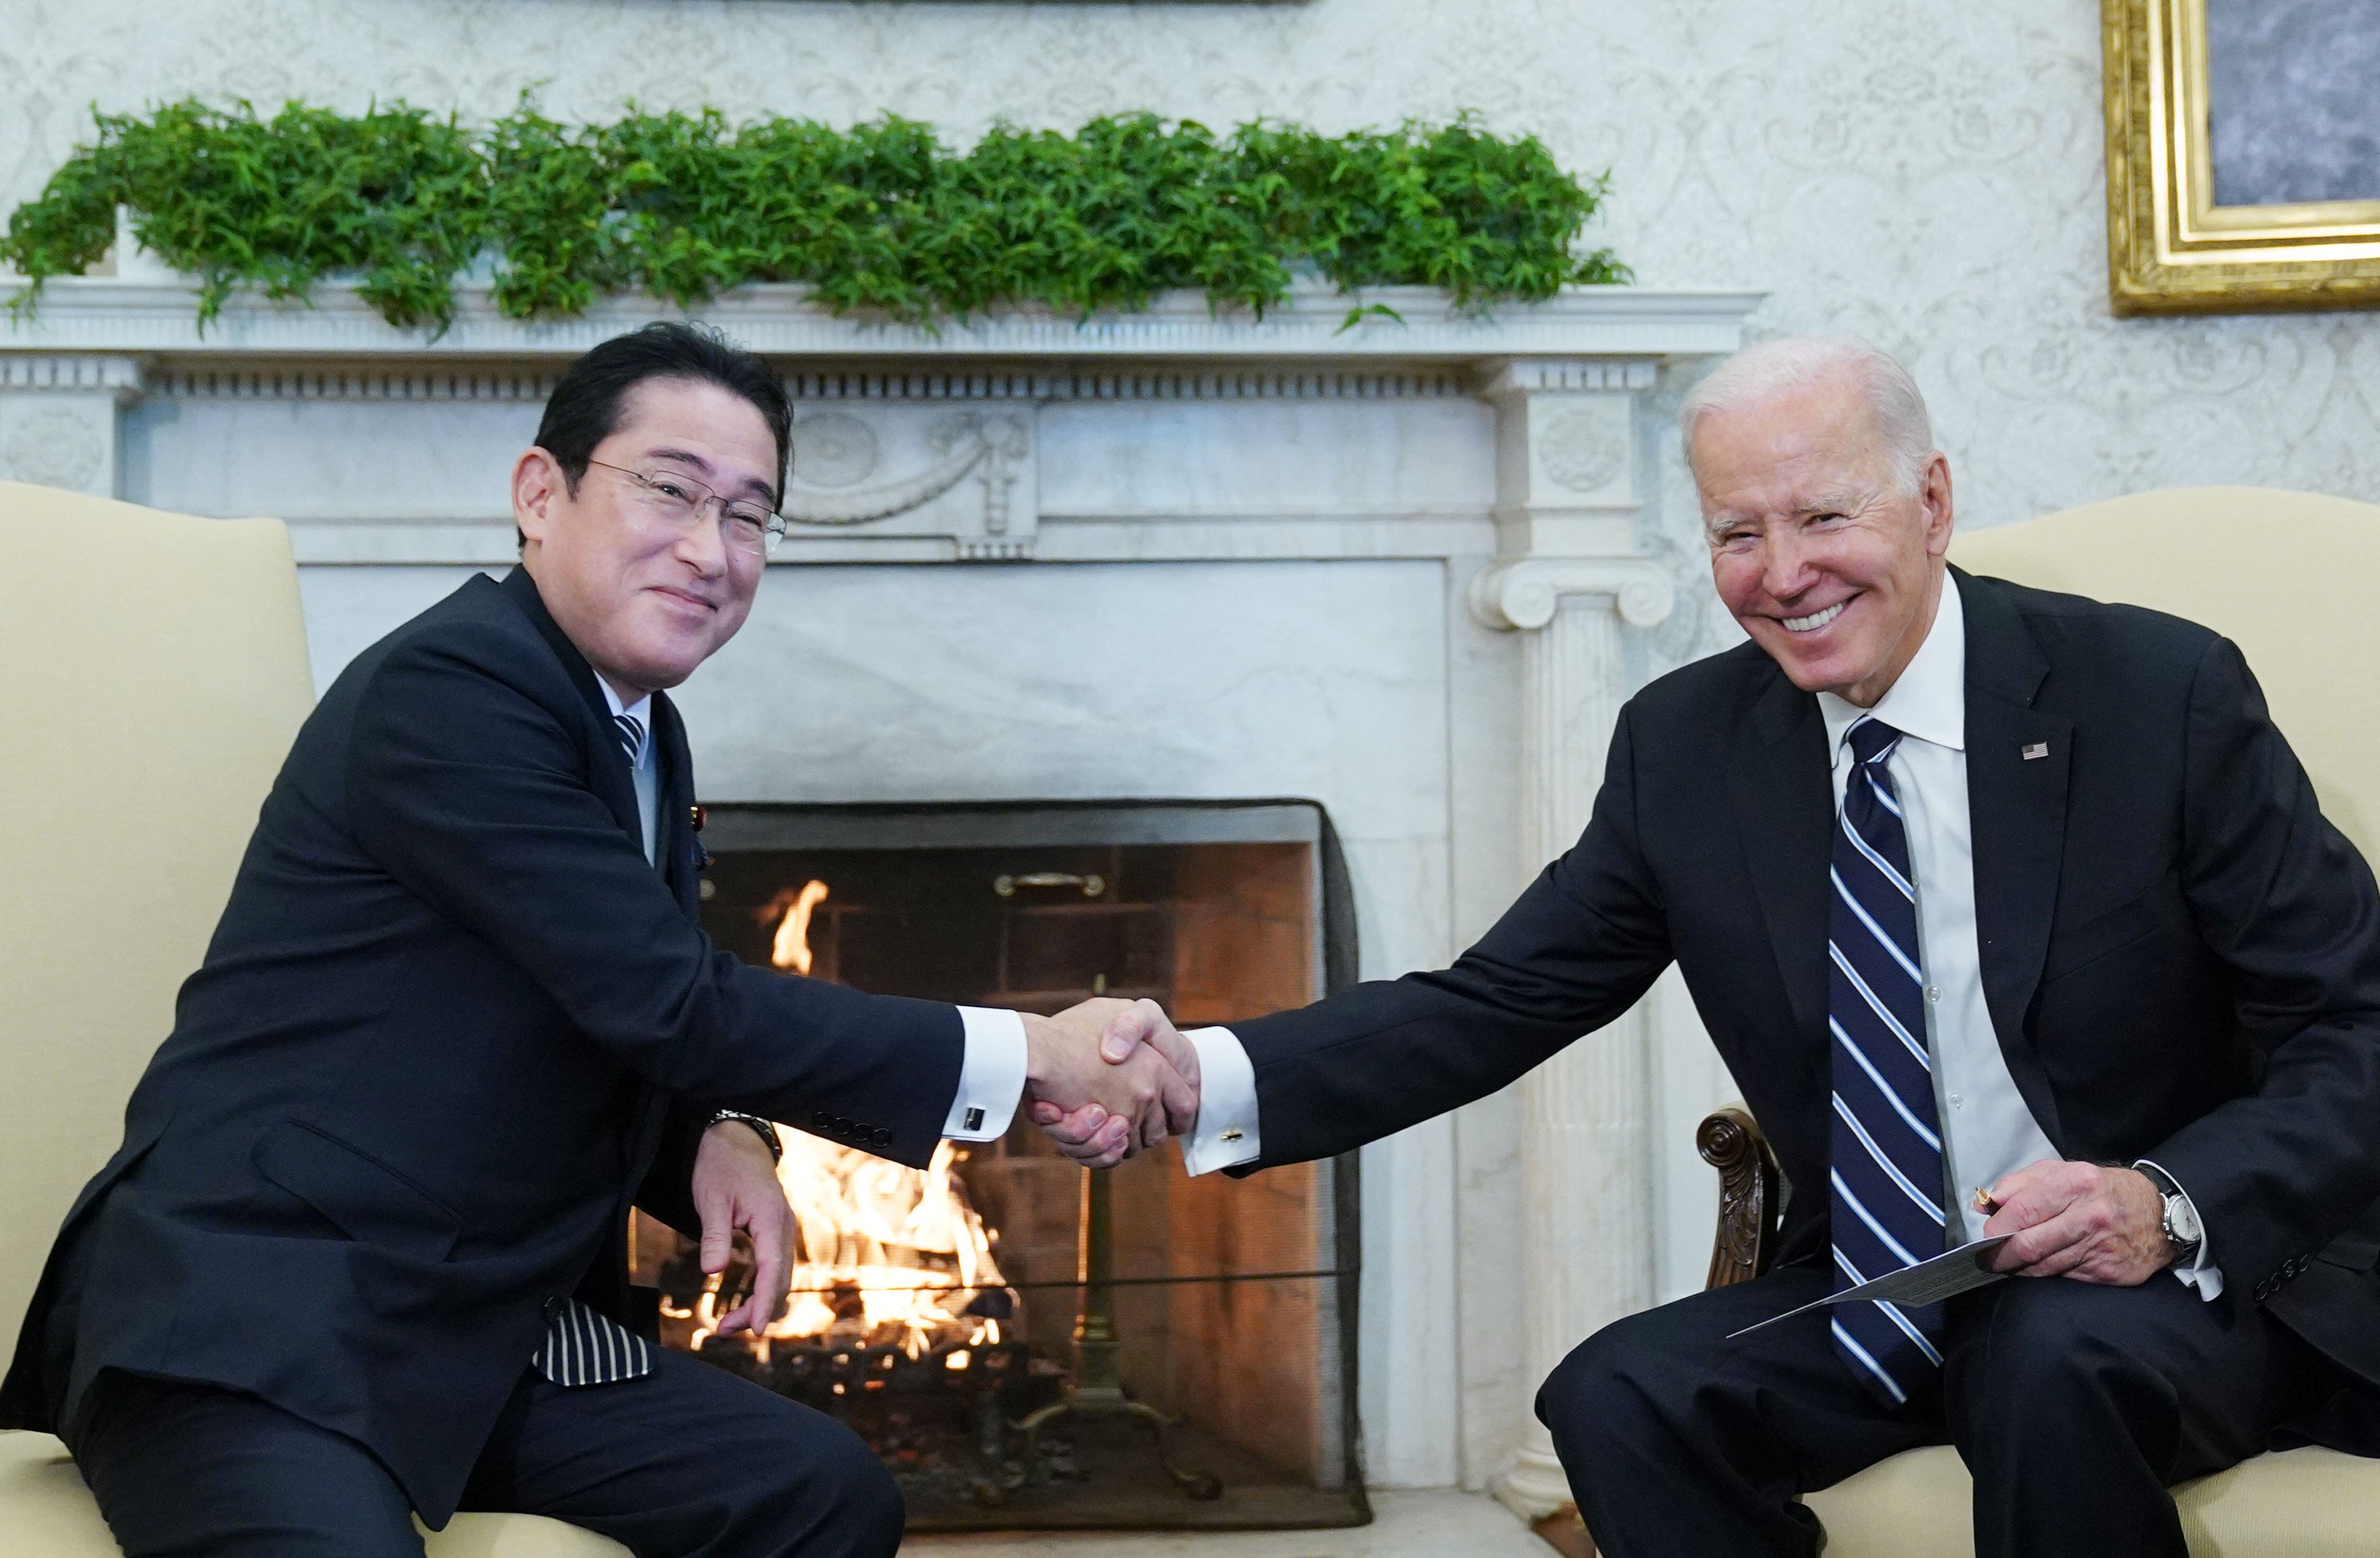 El presidente de los Estados Unidos, Joe Biden, le da la mano al primer ministro de Japón, Fumio Kishida, durante una reunión en la Oficina Oval de la Casa Blanca en Washington, DC el 13 de enero de 2023.